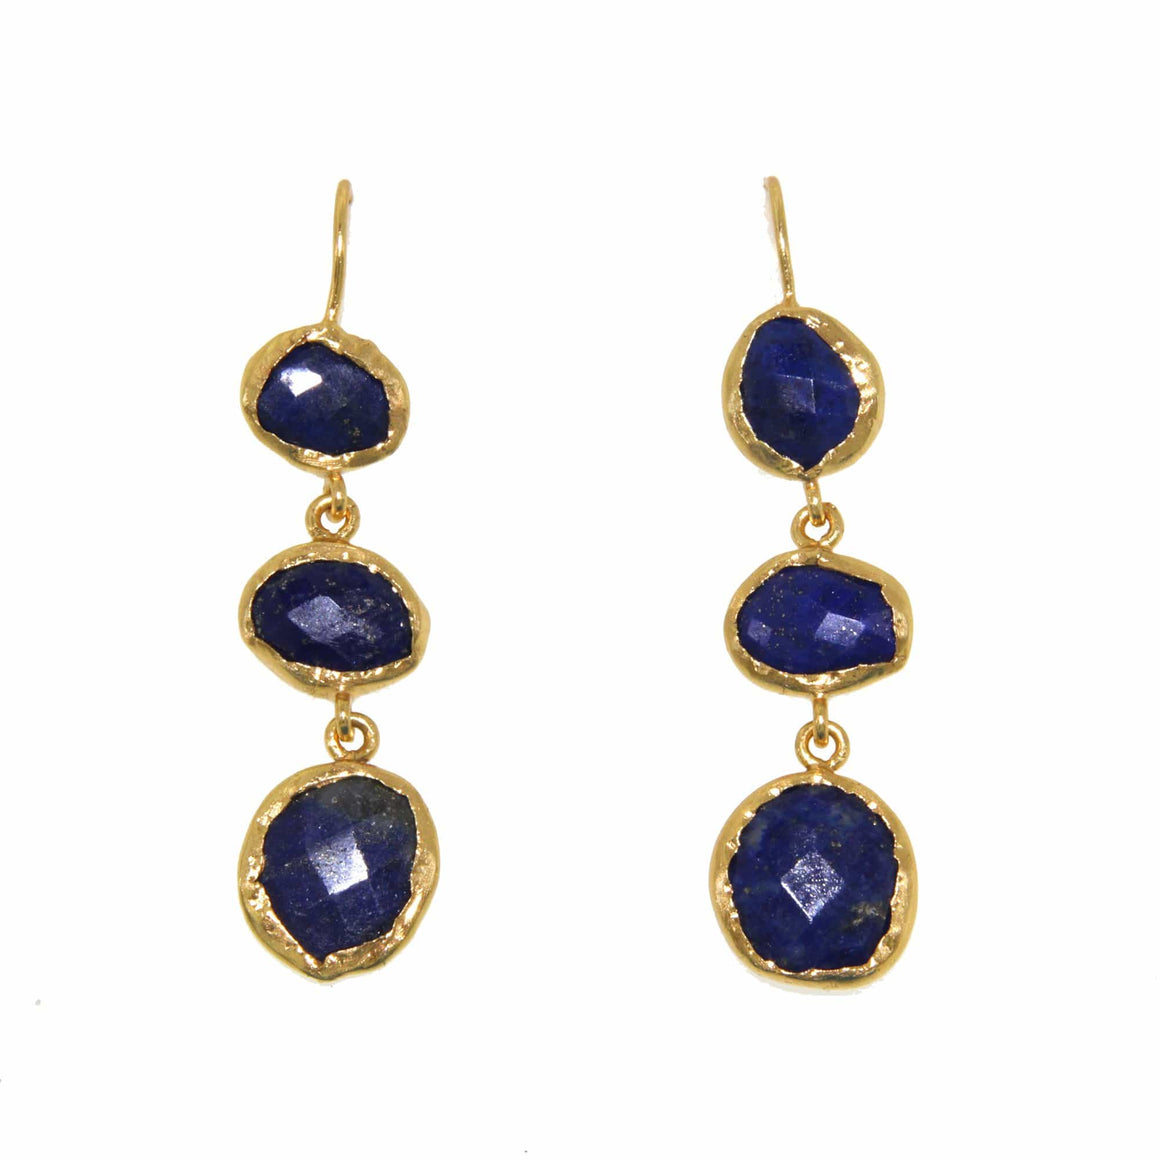 Manjusha Jewels earrings Celestial Drop Earrings in Lapis Lazuli